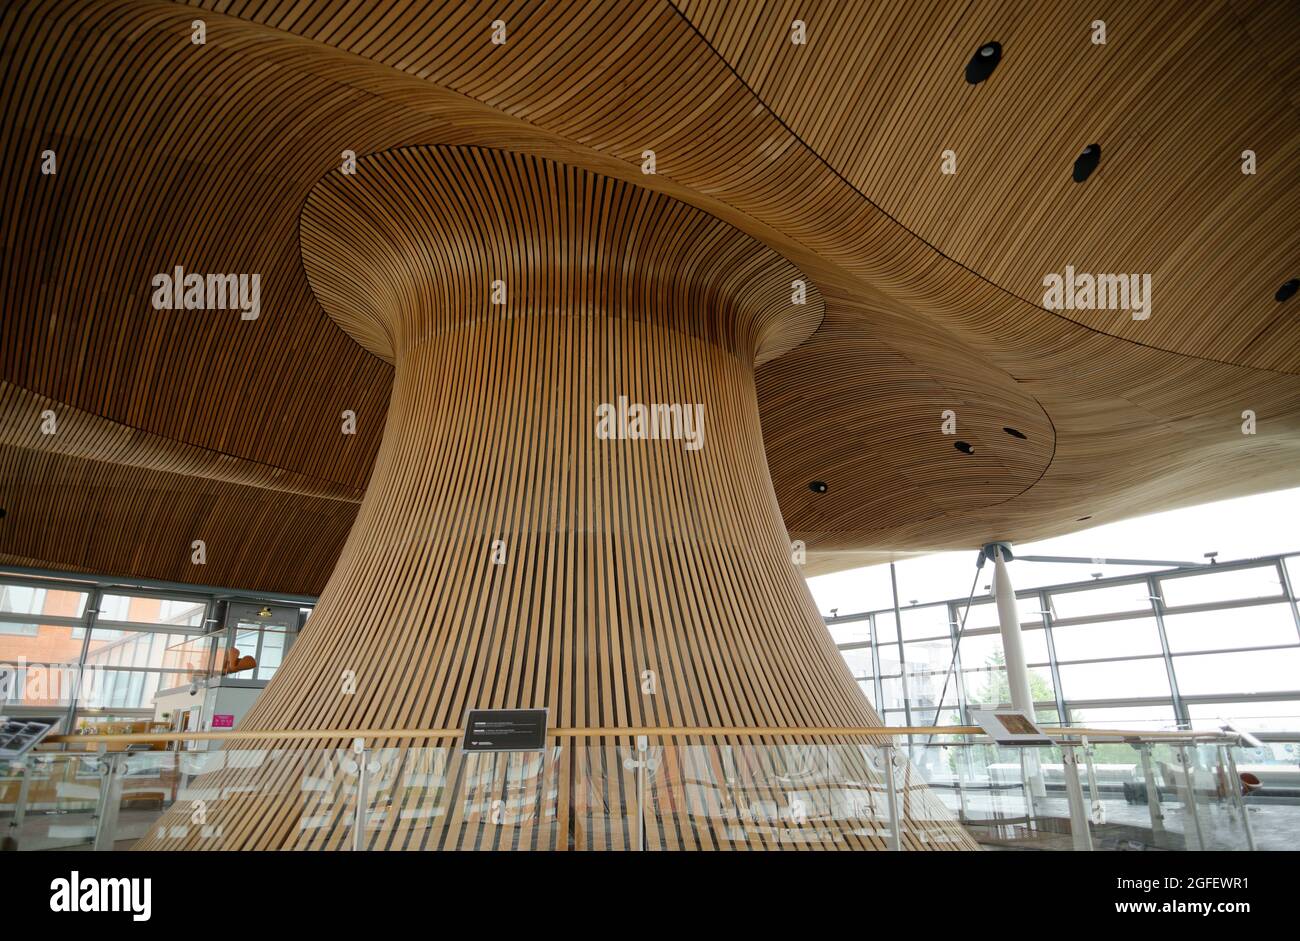 À l'intérieur du bâtiment du Parlement gallois, dans la baie de Cardiff, au pays de Galles. Plafond/toit ondulé de type champignon en bois de cèdre. Richard Rogers a conçu le bâtiment. Banque D'Images